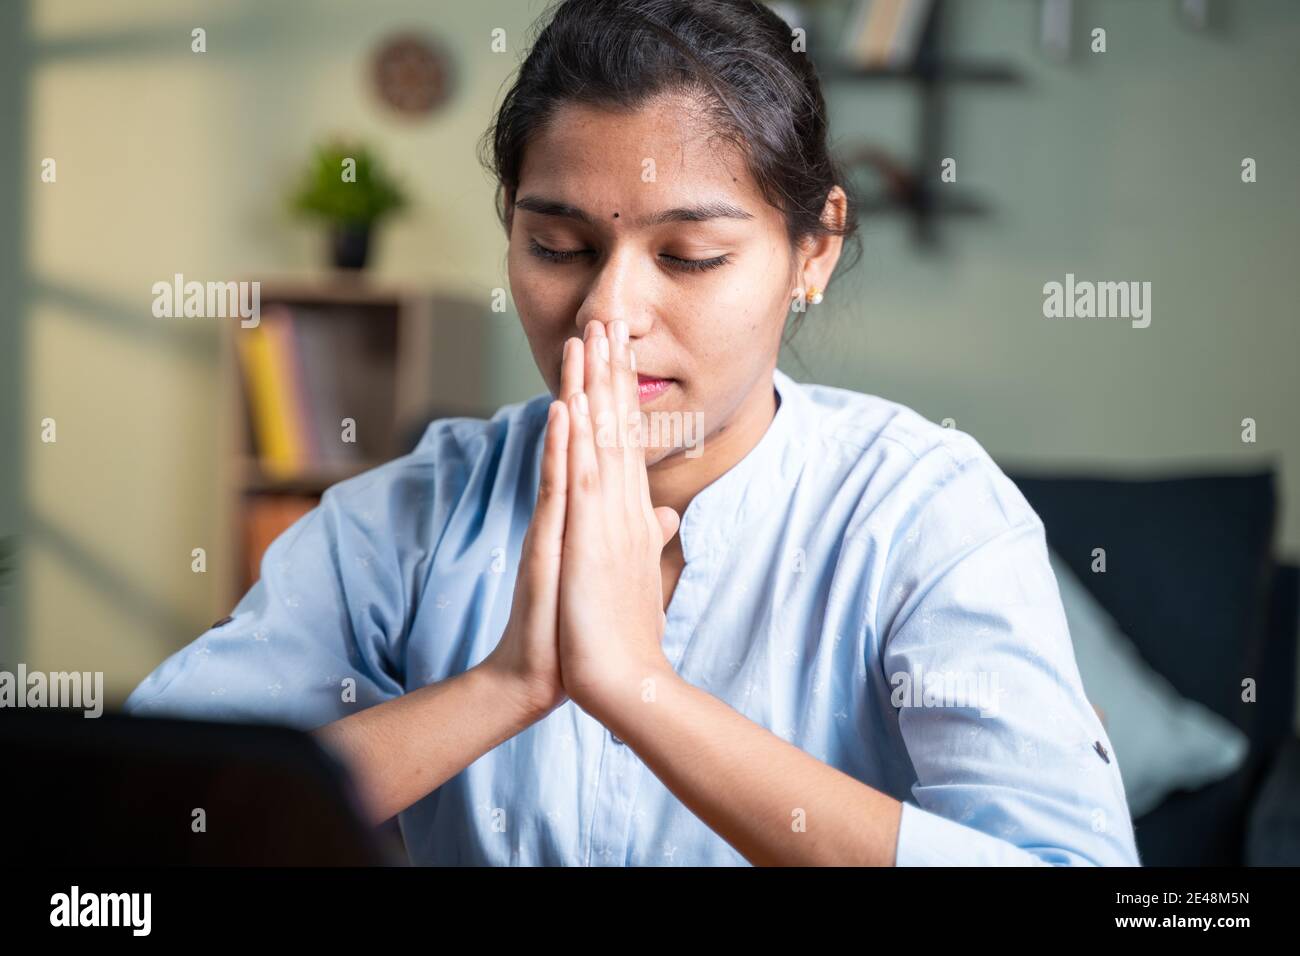 Junge Geschäftsfrau beten vor dem Laptop nach Abschluss der Online-Test oder Prüfung für Ergebnisse - Konzept des Glaubens, Dankbarkeit in gott Stockfoto